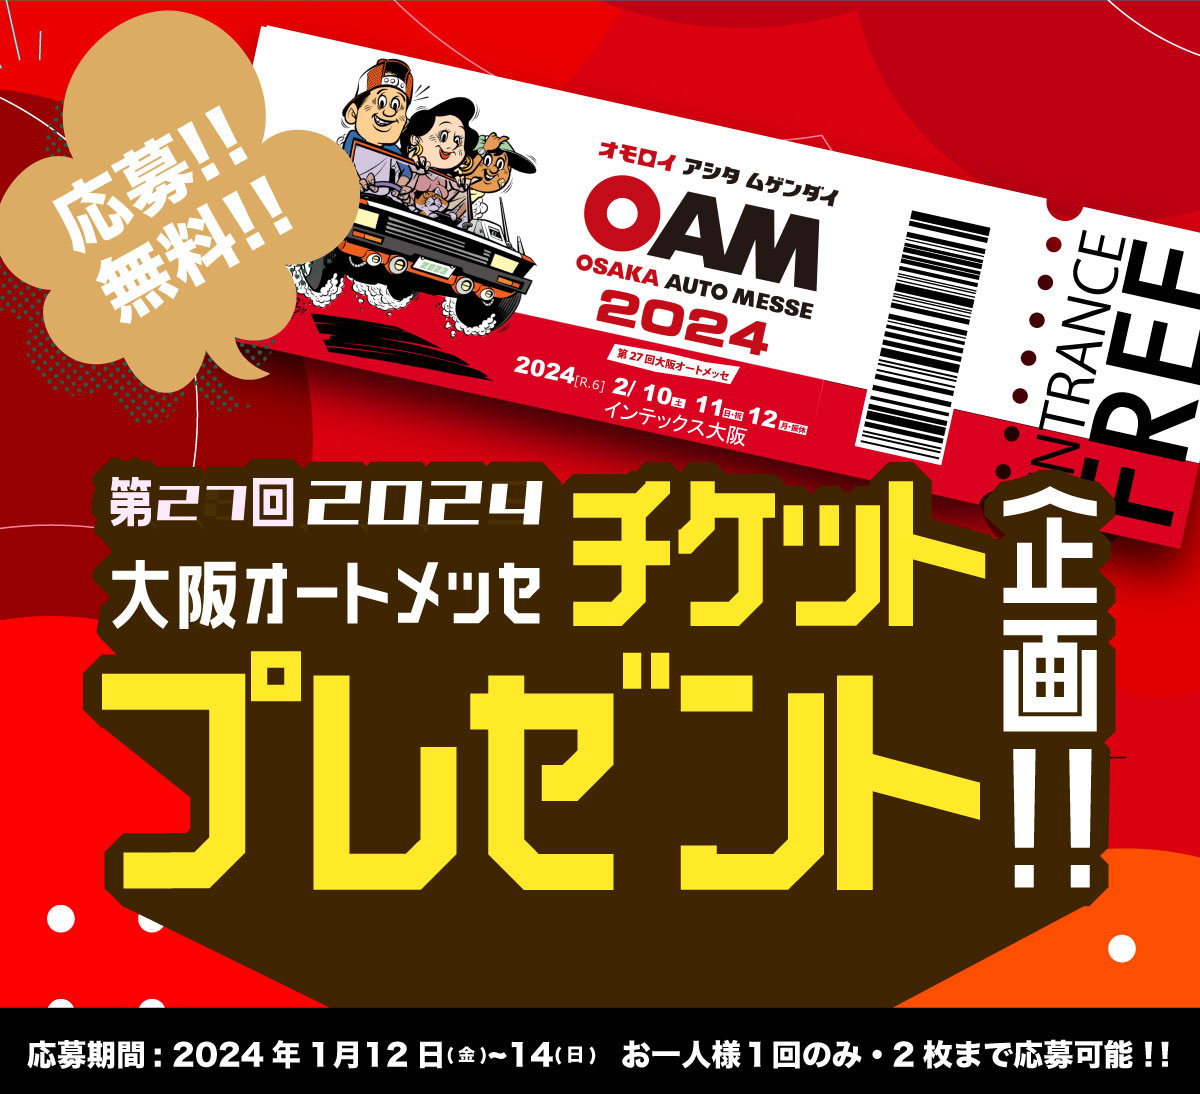 バナー:【数量限定】第27回大阪オートメッセ 2024 チケット抽選プレゼント企画！！